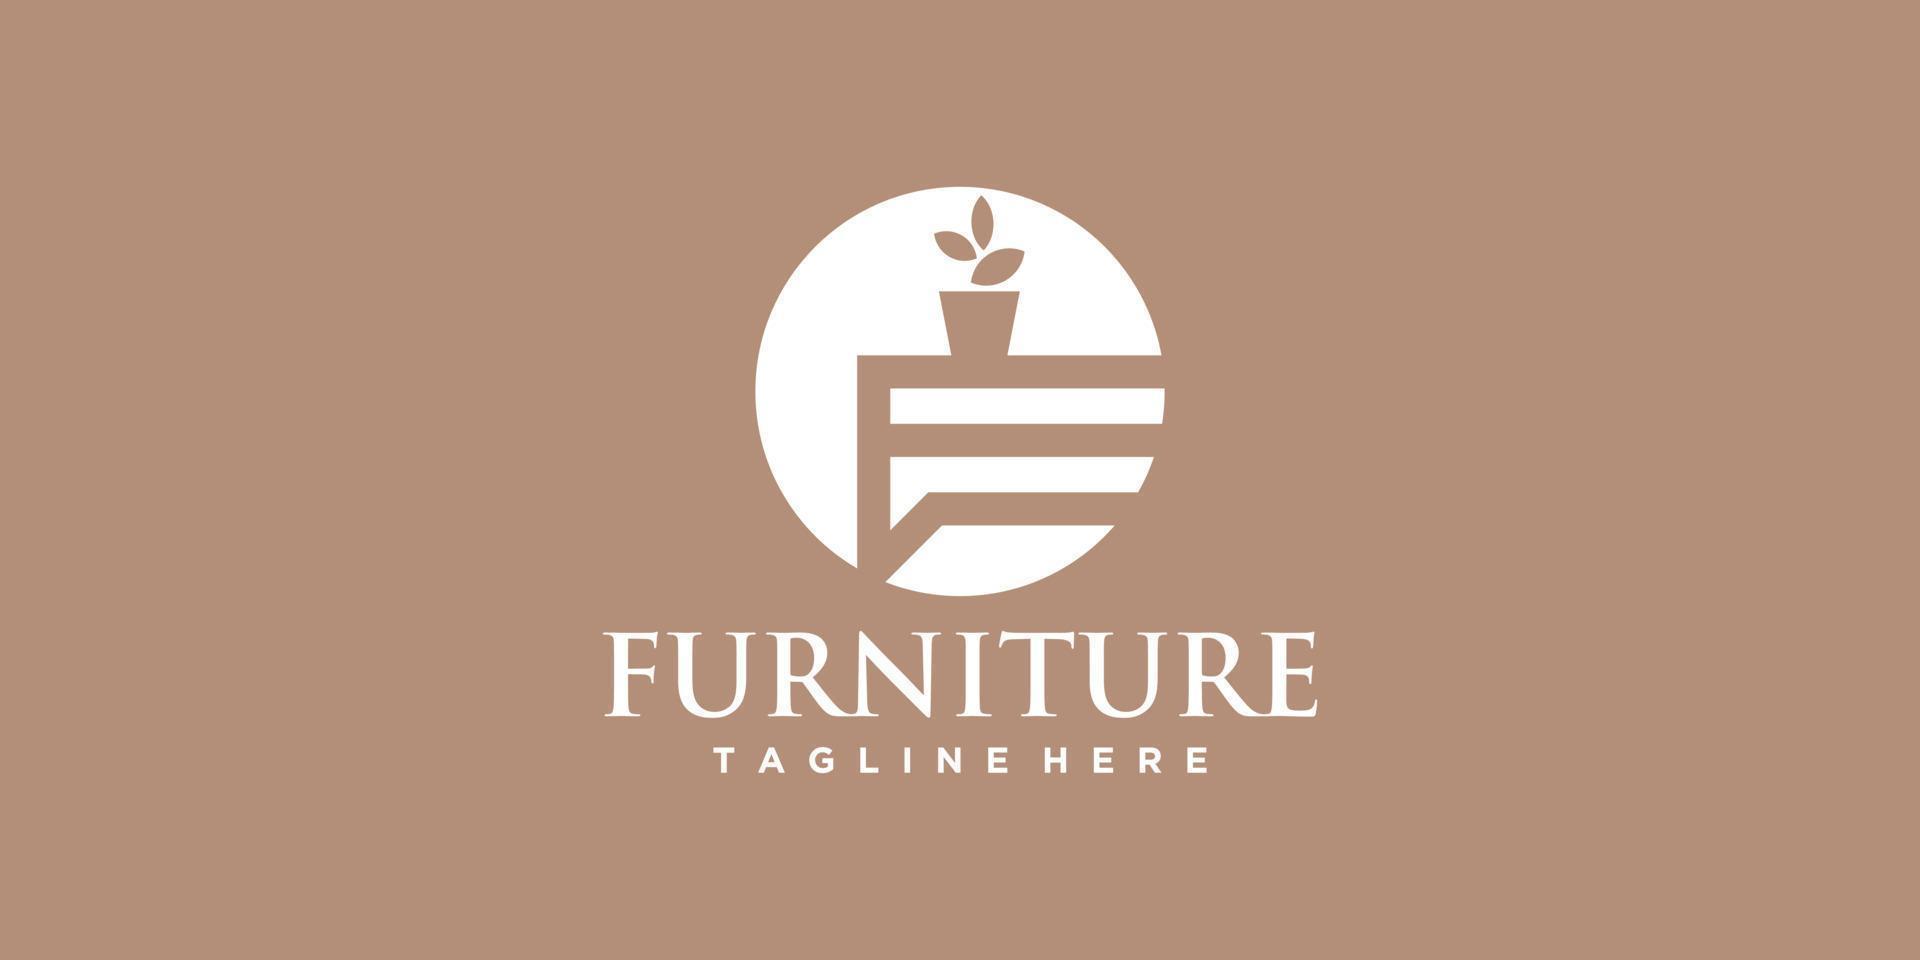 Minimalist furniture logo design with simple concept Premium Vector